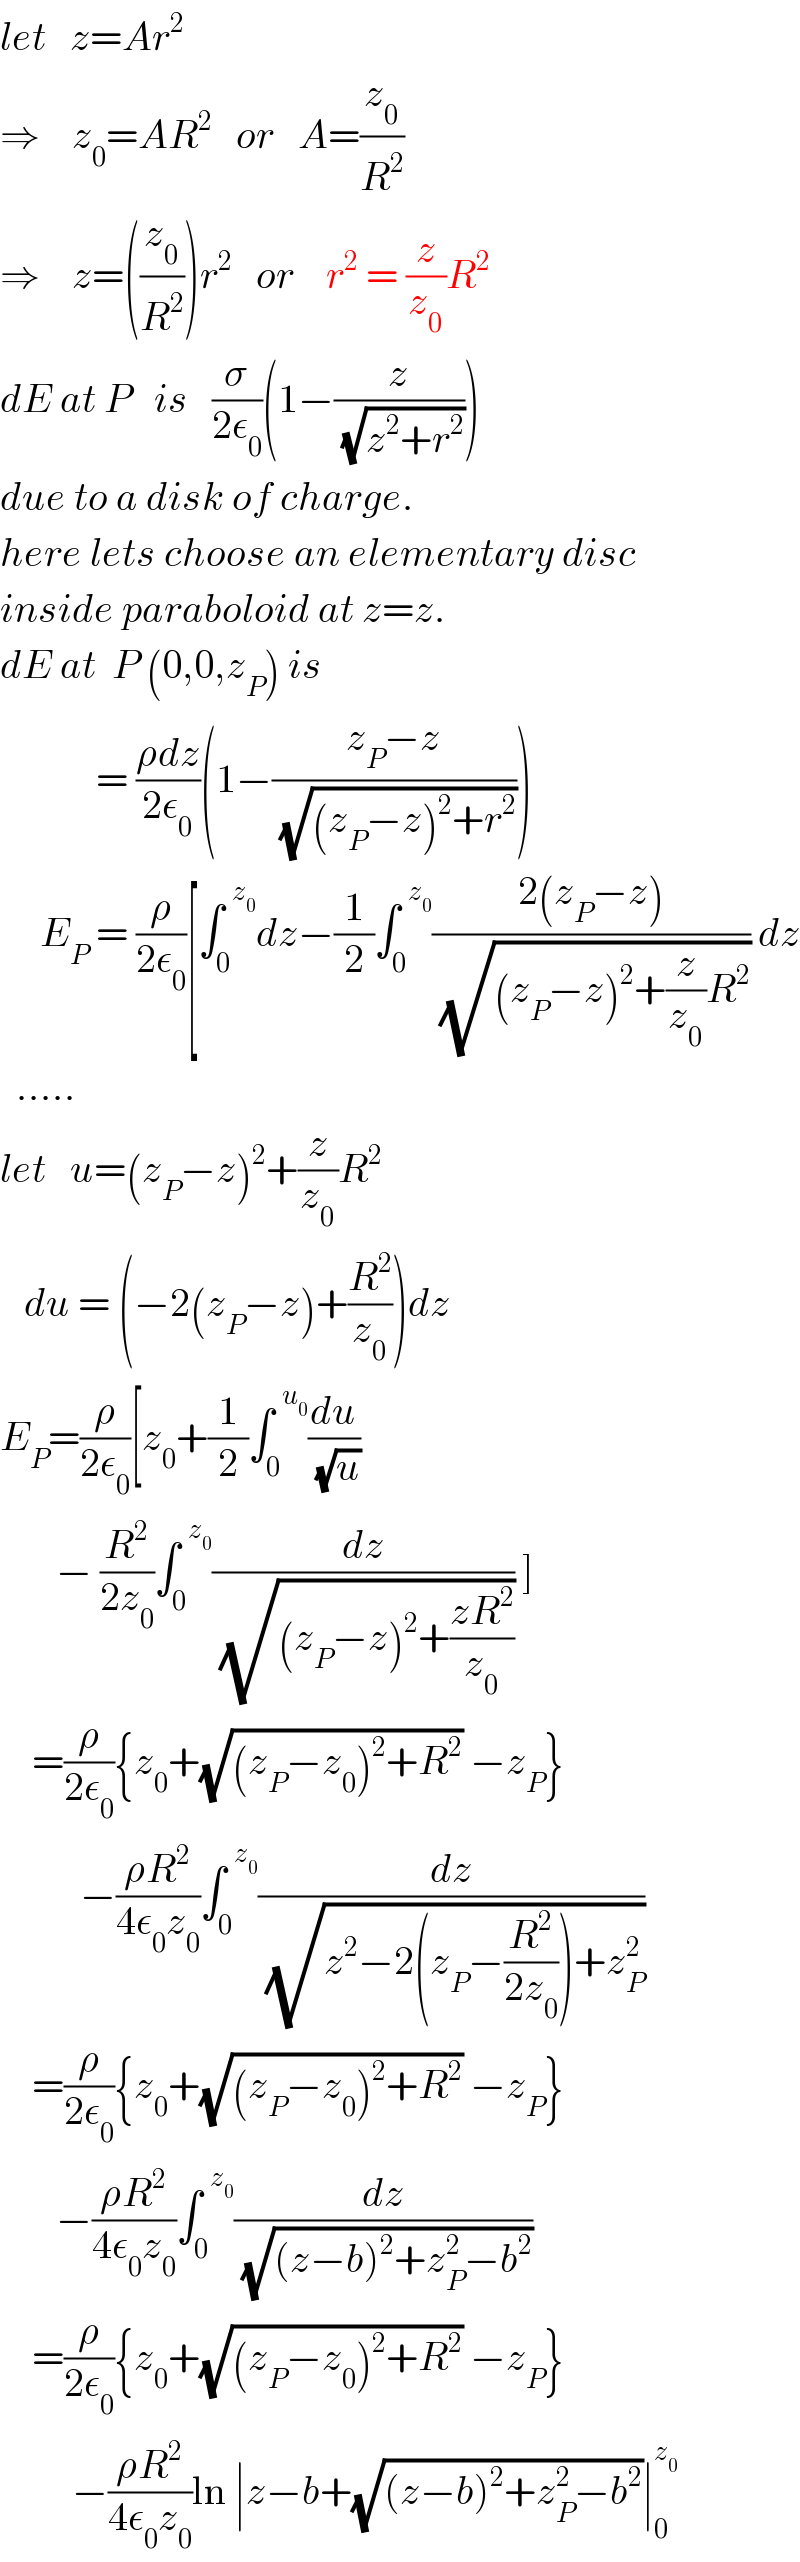 let   z=Ar^2   ⇒    z_0 =AR^2    or   A=(z_0 /R^2 )  ⇒    z=((z_0 /R^2 ))r^2    or    r^2  = (z/z_0 )R^2   dE at P   is   (σ/(2ε_0 ))(1−(z/(√(z^2 +r^2 ))))  due to a disk of charge.  here lets choose an elementary disc   inside paraboloid at z=z.  dE at  P (0,0,z_P ) is              = ((ρdz)/(2ε_0 ))(1−((z_P −z)/(√((z_P −z)^2 +r^2 ))))       E_P  = (ρ/(2ε_0 ))[∫_0 ^(  z_0 ) dz−(1/2)∫_0 ^(  z_0 ) ((2(z_P −z))/(√((z_P −z)^2 +(z/z_0 )R^2 ))) dz    .....    let   u=(z_P −z)^2 +(z/z_0 )R^2      du = (−2(z_P −z)+(R^2 /z_0 ))dz  E_P =(ρ/(2ε_0 ))[z_0 +(1/2)∫_0 ^(  u_0 ) (du/(√u))         − (R^2 /(2z_0 ))∫_0 ^(  z_0 ) (dz/(√((z_P −z)^2 +((zR^2 )/z_0 )))) ]      =(ρ/(2ε_0 )){z_0 +(√((z_P −z_0 )^2 +R^2 )) −z_P }            −((ρR^2 )/(4ε_0 z_0 ))∫_0 ^(  z_0 ) (dz/(√(z^2 −2(z_P −(R^2 /(2z_0 )))+z_P ^2 )))      =(ρ/(2ε_0 )){z_0 +(√((z_P −z_0 )^2 +R^2 )) −z_P }         −((ρR^2 )/(4ε_0 z_0 ))∫_0 ^(  z_0 ) (dz/(√((z−b)^2 +z_P ^2 −b^2 )))      =(ρ/(2ε_0 )){z_0 +(√((z_P −z_0 )^2 +R^2 )) −z_P }           −((ρR^2 )/(4ε_0 z_0 ))ln ∣z−b+(√((z−b)^2 +z_P ^2 −b^2 ))∣_0 ^z_0    